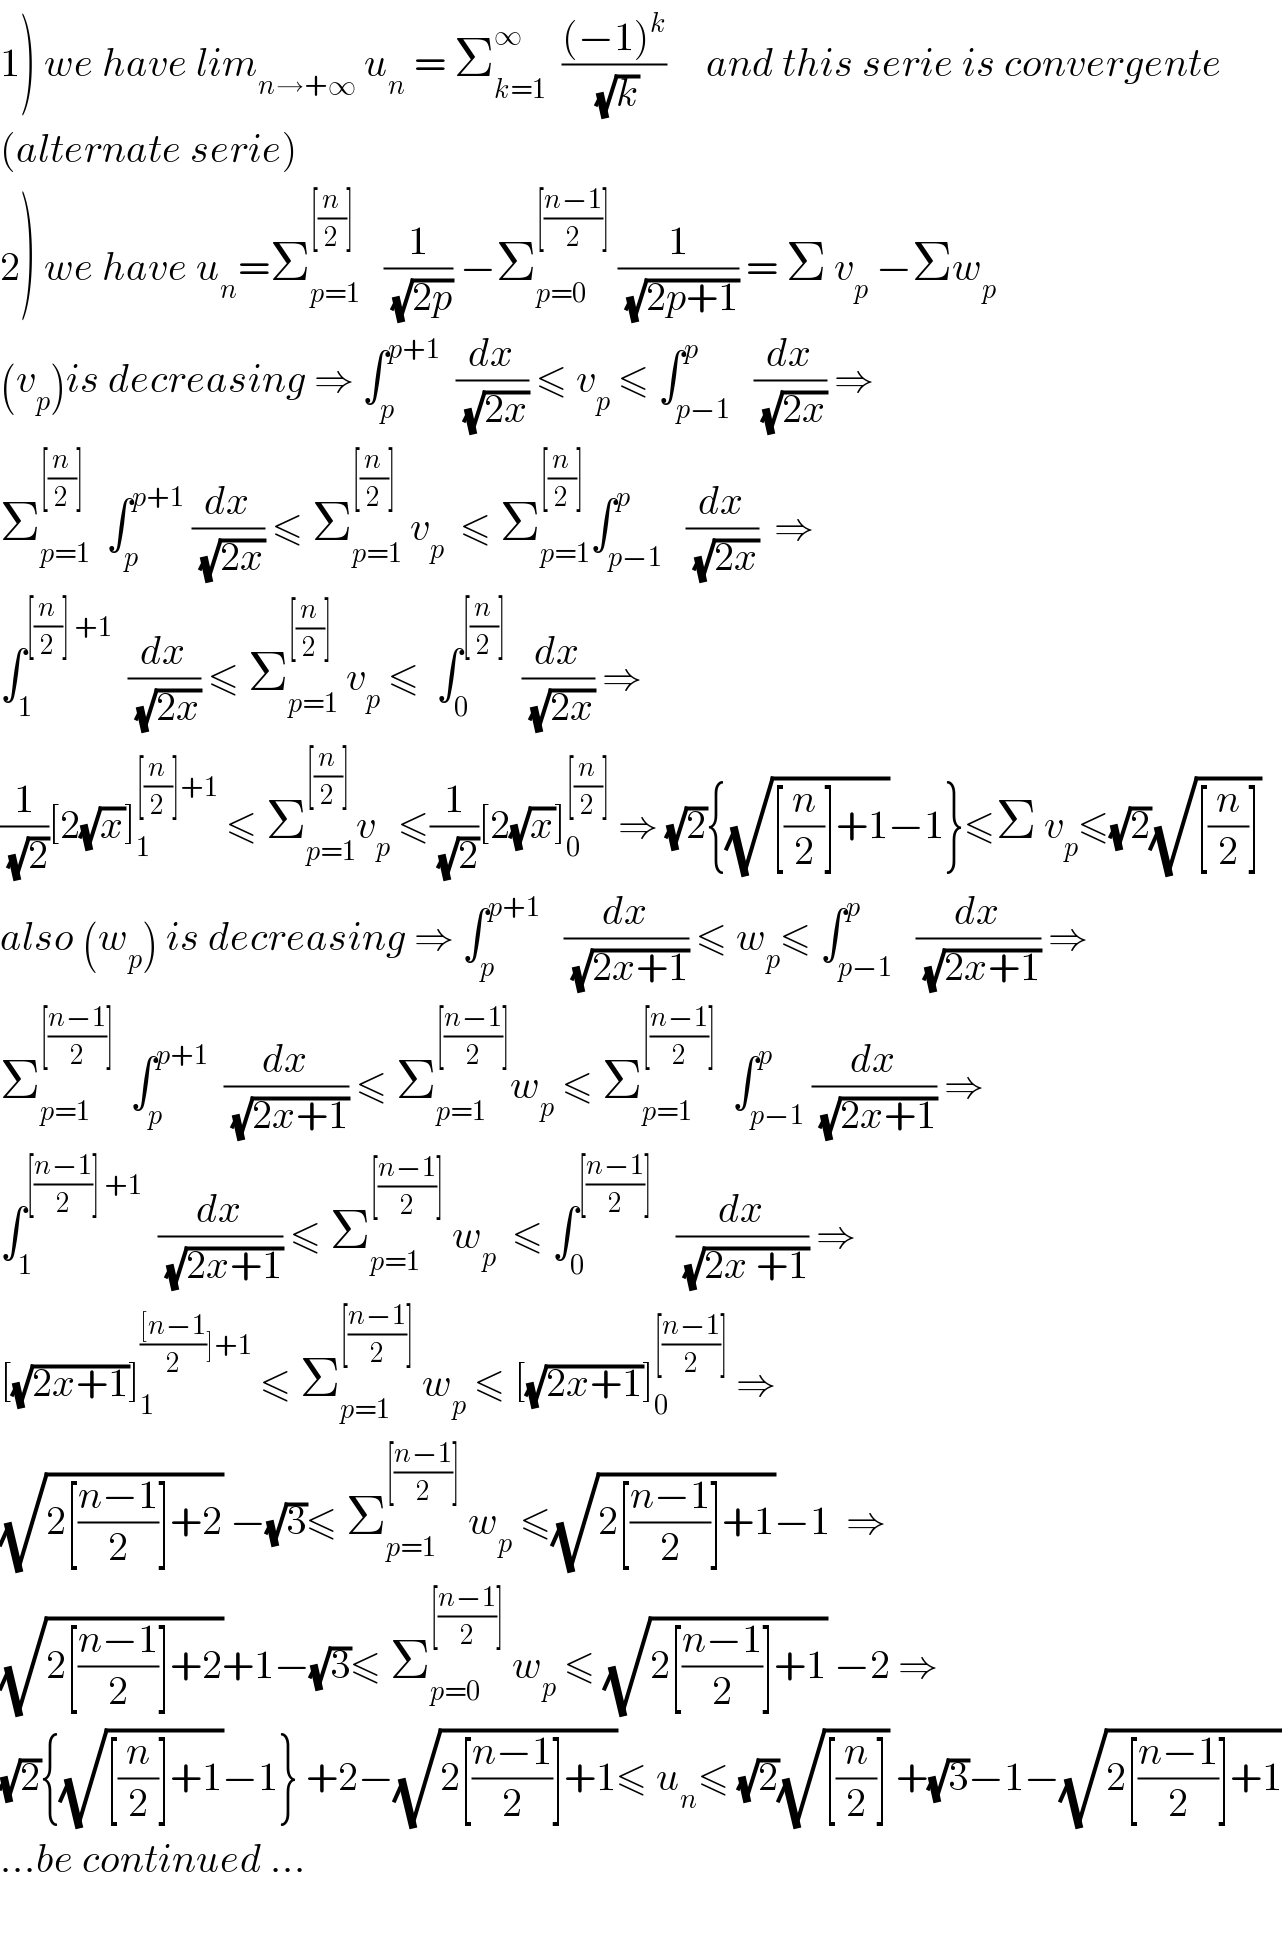 1) we have lim_(n→+∞)  u_n  = Σ_(k=1) ^∞   (((−1)^k )/(√k))     and this serie is convergente  (alternate serie)  2) we have u_n =Σ_(p=1) ^([(n/2)])    (1/(√(2p))) −Σ_(p=0) ^([((n−1)/2)])  (1/(√(2p+1))) = Σ v_p  −Σw_p   (v_p )is decreasing ⇒ ∫_p ^(p+1)   (dx/(√(2x))) ≤ v_p  ≤ ∫_(p−1) ^p   (dx/(√(2x))) ⇒  Σ_(p=1) ^([(n/2)])   ∫_p ^(p+1)  (dx/(√(2x))) ≤ Σ_(p=1) ^([(n/2)])  v_p   ≤ Σ_(p=1) ^([(n/2)]) ∫_(p−1) ^p   (dx/(√(2x)))  ⇒  ∫_1 ^([(n/2)] +1)   (dx/(√(2x))) ≤ Σ_(p=1) ^([(n/2)])  v_p  ≤  ∫_0 ^([(n/2)])   (dx/(√(2x))) ⇒  (1/(√2))[2(√x)]_1 ^([(n/2)]+1)  ≤ Σ_(p=1) ^([(n/2)]) v_p  ≤(1/(√2))[2(√x)]_0 ^([(n/2)])  ⇒ (√2){(√([(n/2)]+1))−1}≤Σ v_p ≤(√2)(√([(n/2)]))  also (w_p ) is decreasing ⇒ ∫_p ^(p+1)    (dx/(√(2x+1))) ≤ w_p ≤ ∫_(p−1) ^p   (dx/(√(2x+1))) ⇒  Σ_(p=1) ^([((n−1)/2)])   ∫_p ^(p+1)   (dx/(√(2x+1))) ≤ Σ_(p=1) ^([((n−1)/2)]) w_p  ≤ Σ_(p=1) ^([((n−1)/2)])   ∫_(p−1) ^p (dx/(√(2x+1))) ⇒  ∫_1 ^([((n−1)/2)] +1)   (dx/(√(2x+1))) ≤ Σ_(p=1) ^([((n−1)/2)])  w_p   ≤ ∫_0 ^([((n−1)/2)])    (dx/(√(2x +1))) ⇒  [(√(2x+1))]_1 ^((([n−1)/2)]+1)  ≤ Σ_(p=1) ^([((n−1)/2)])  w_p  ≤ [(√(2x+1))]_0 ^([((n−1)/2)])  ⇒  (√(2[((n−1)/2)]+2)) −(√3)≤ Σ_(p=1) ^([((n−1)/2)])  w_p  ≤(√(2[((n−1)/2)]+1))−1  ⇒  (√(2[((n−1)/2)]+2))+1−(√3)≤ Σ_(p=0) ^([((n−1)/2)])  w_p  ≤ (√(2[((n−1)/2)]+1)) −2 ⇒   (√2){(√([(n/2)]+1))−1} +2−(√(2[((n−1)/2)]+1))≤ u_n ≤ (√2)(√([(n/2)])) +(√3)−1−(√(2[((n−1)/2)]+1))  ...be continued ...    